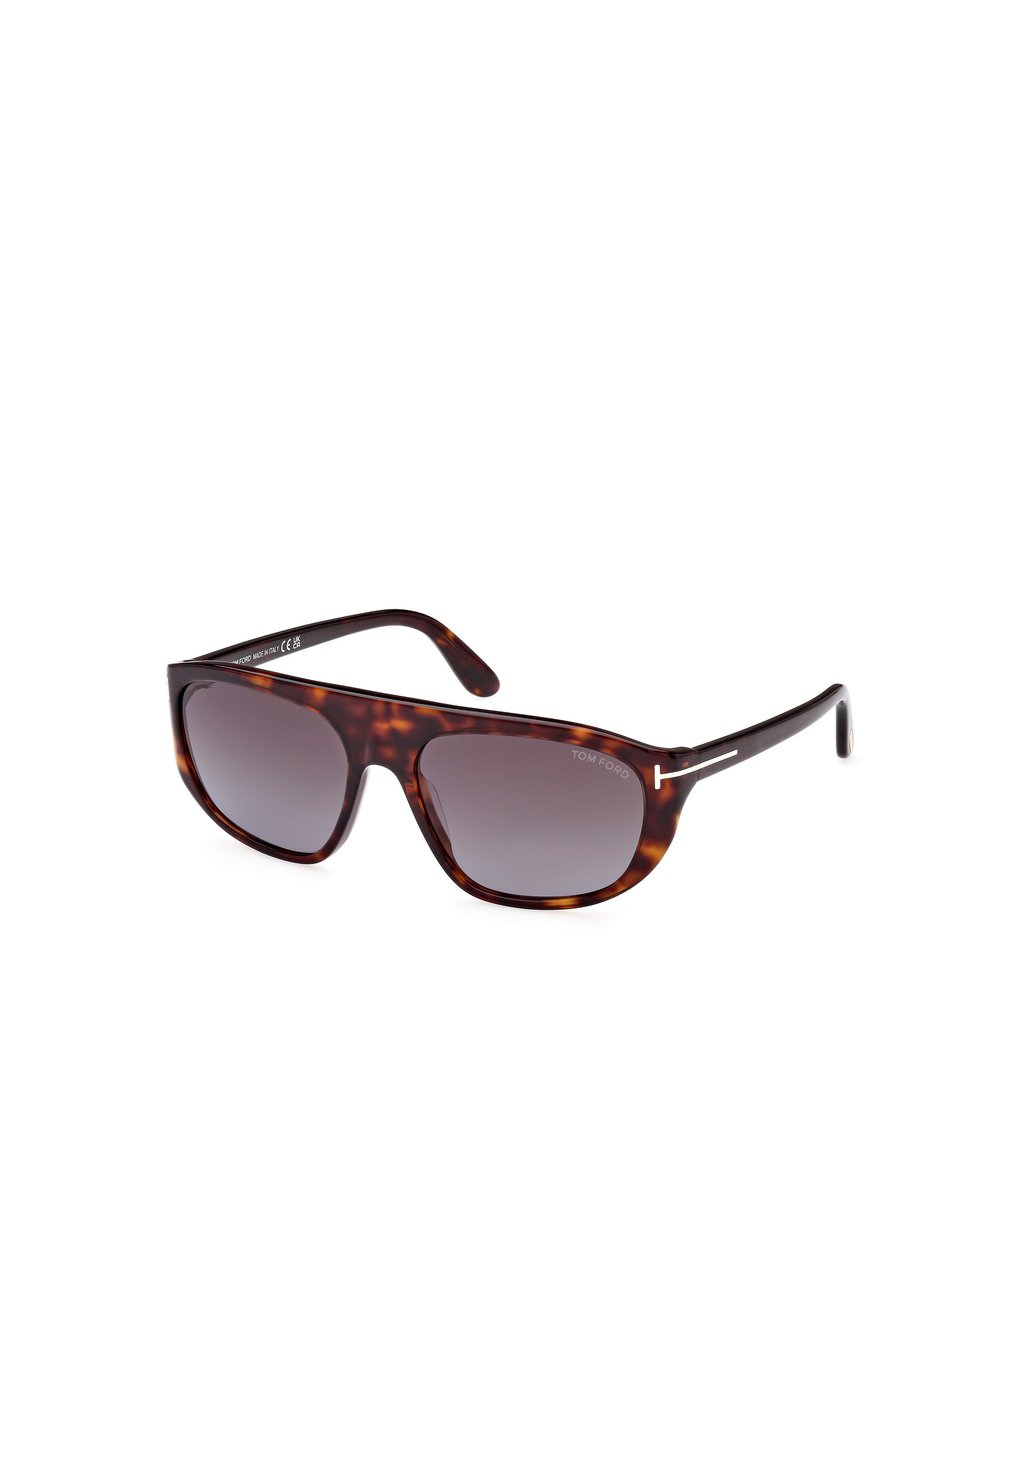 Солнцезащитные очки Tom Ford, светло-коричневые дымчато-серые с градиентом